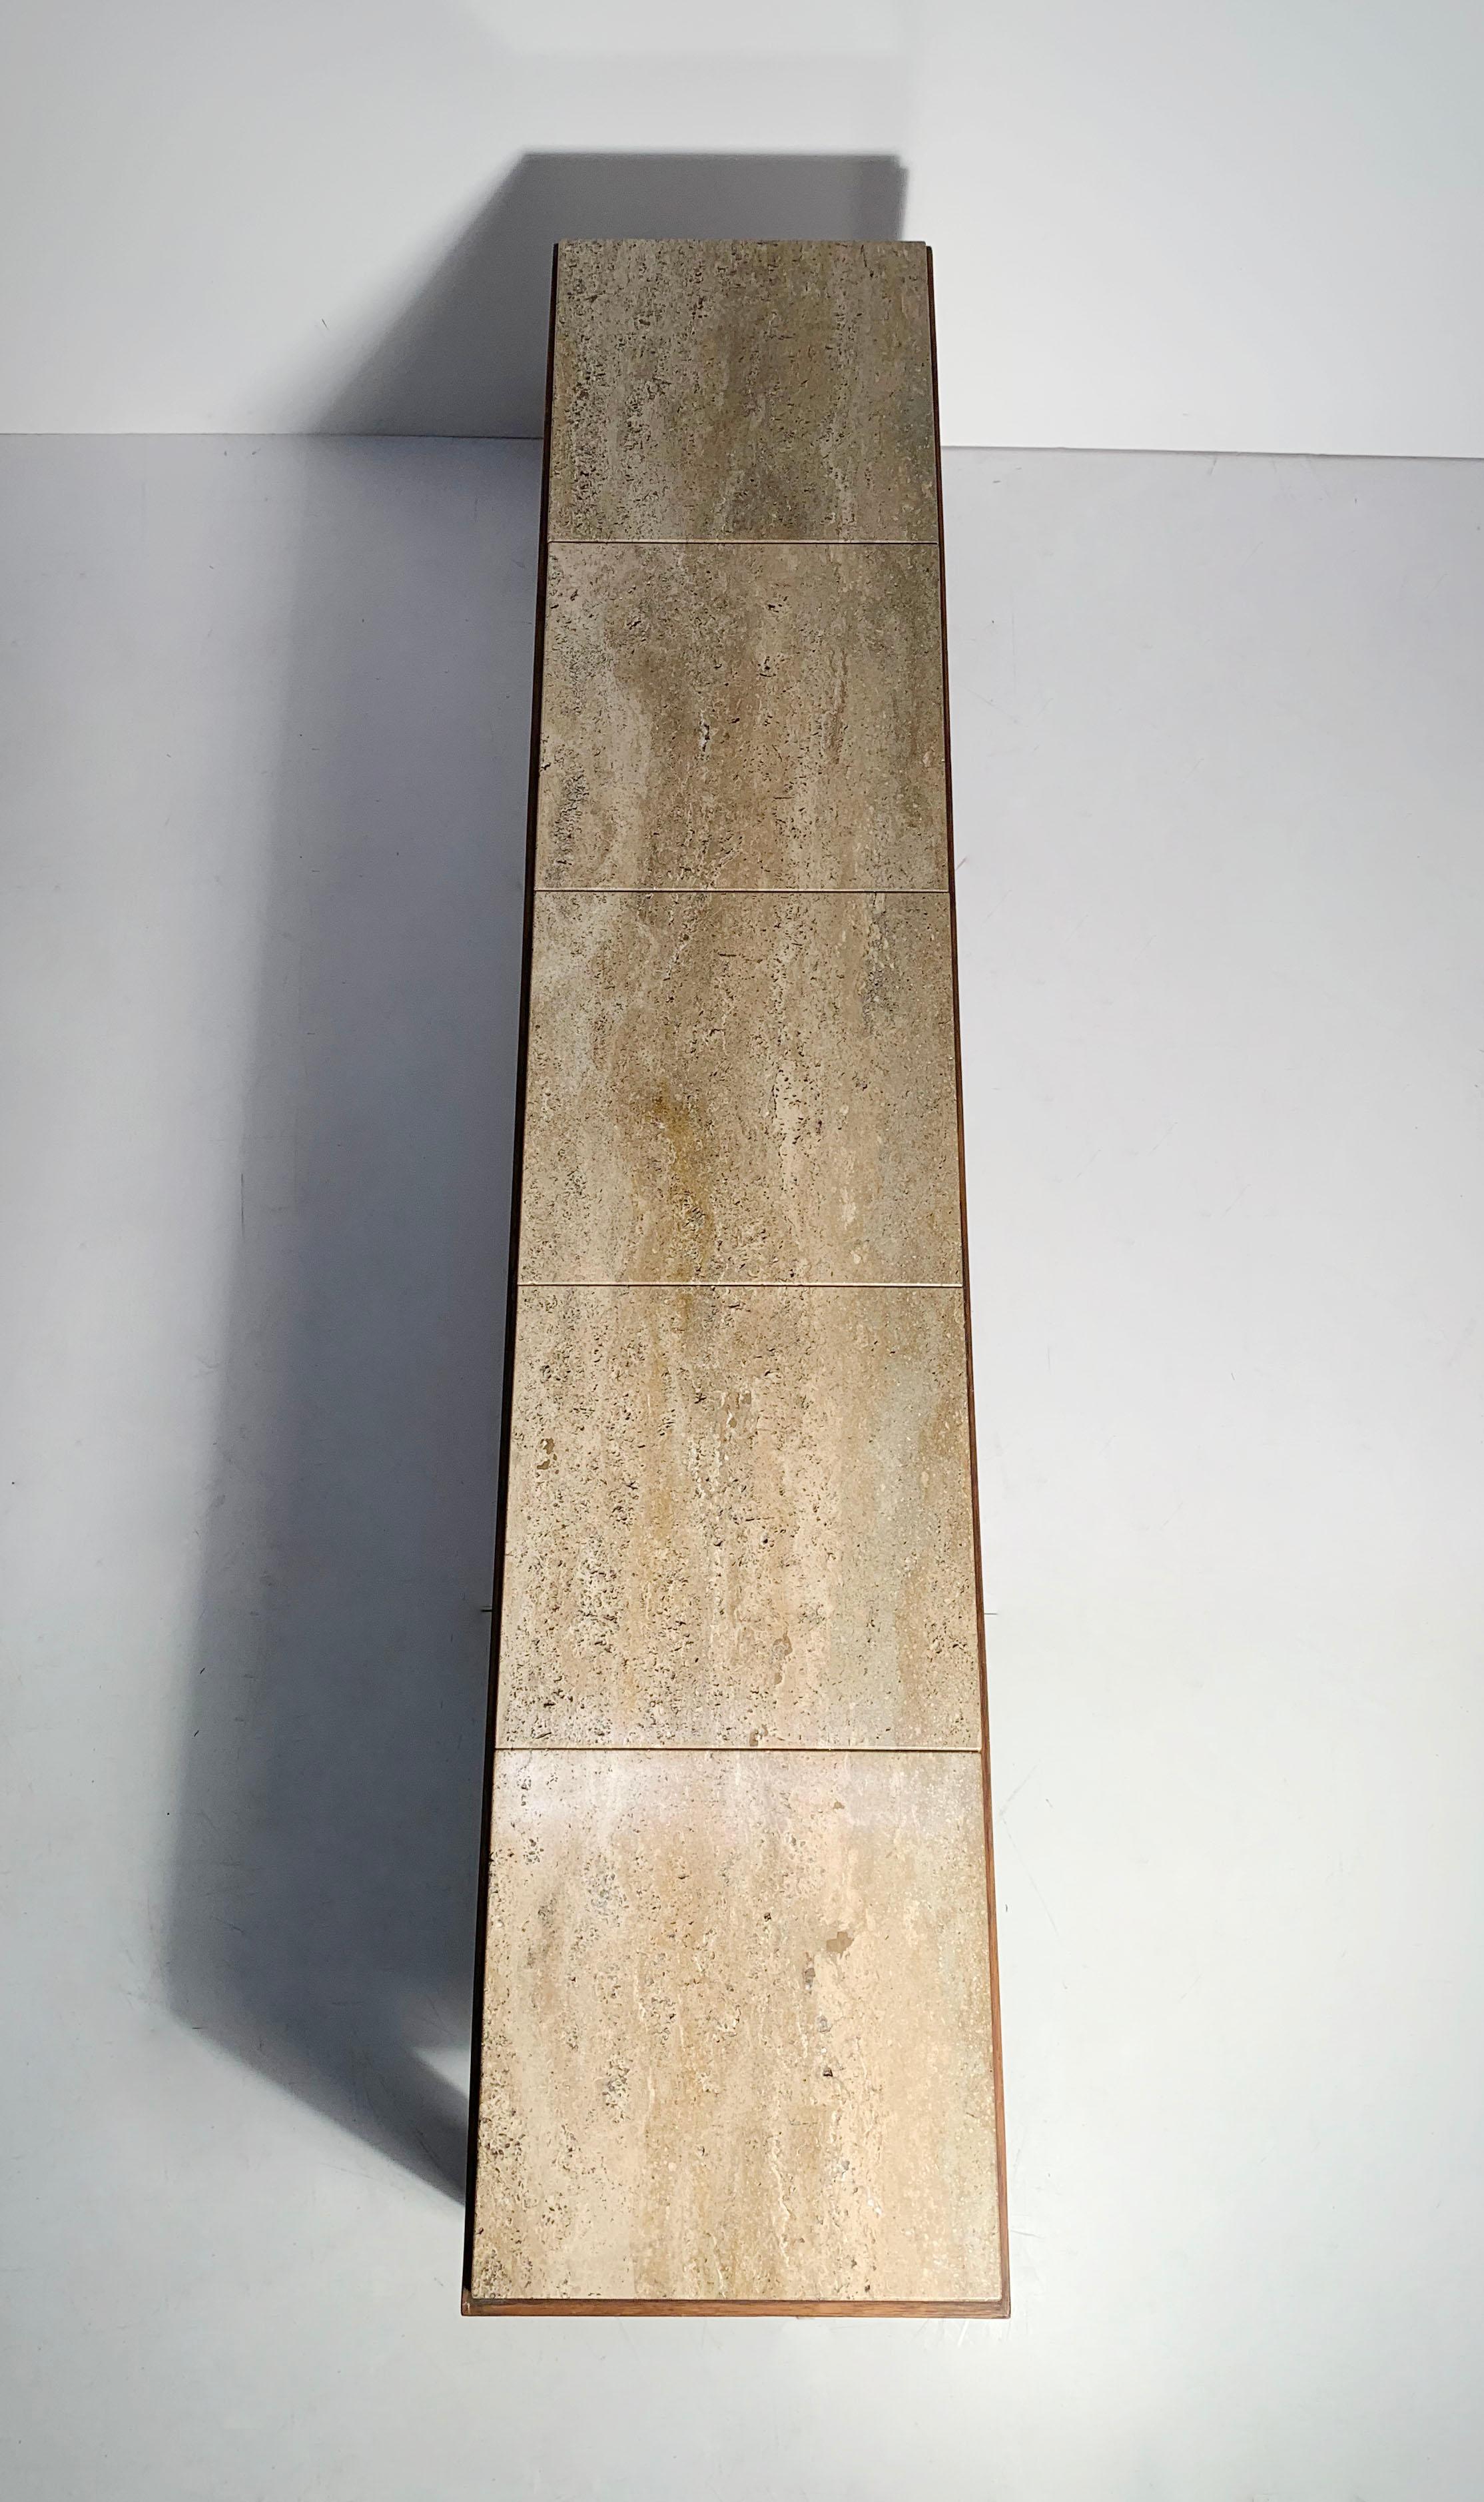 Ein eleganter, niedriger Wormley-Konsolen-/Couchtisch mit 9 x 9 Travertinfliesen, die eine lange, rechteckige Marmorform bilden.